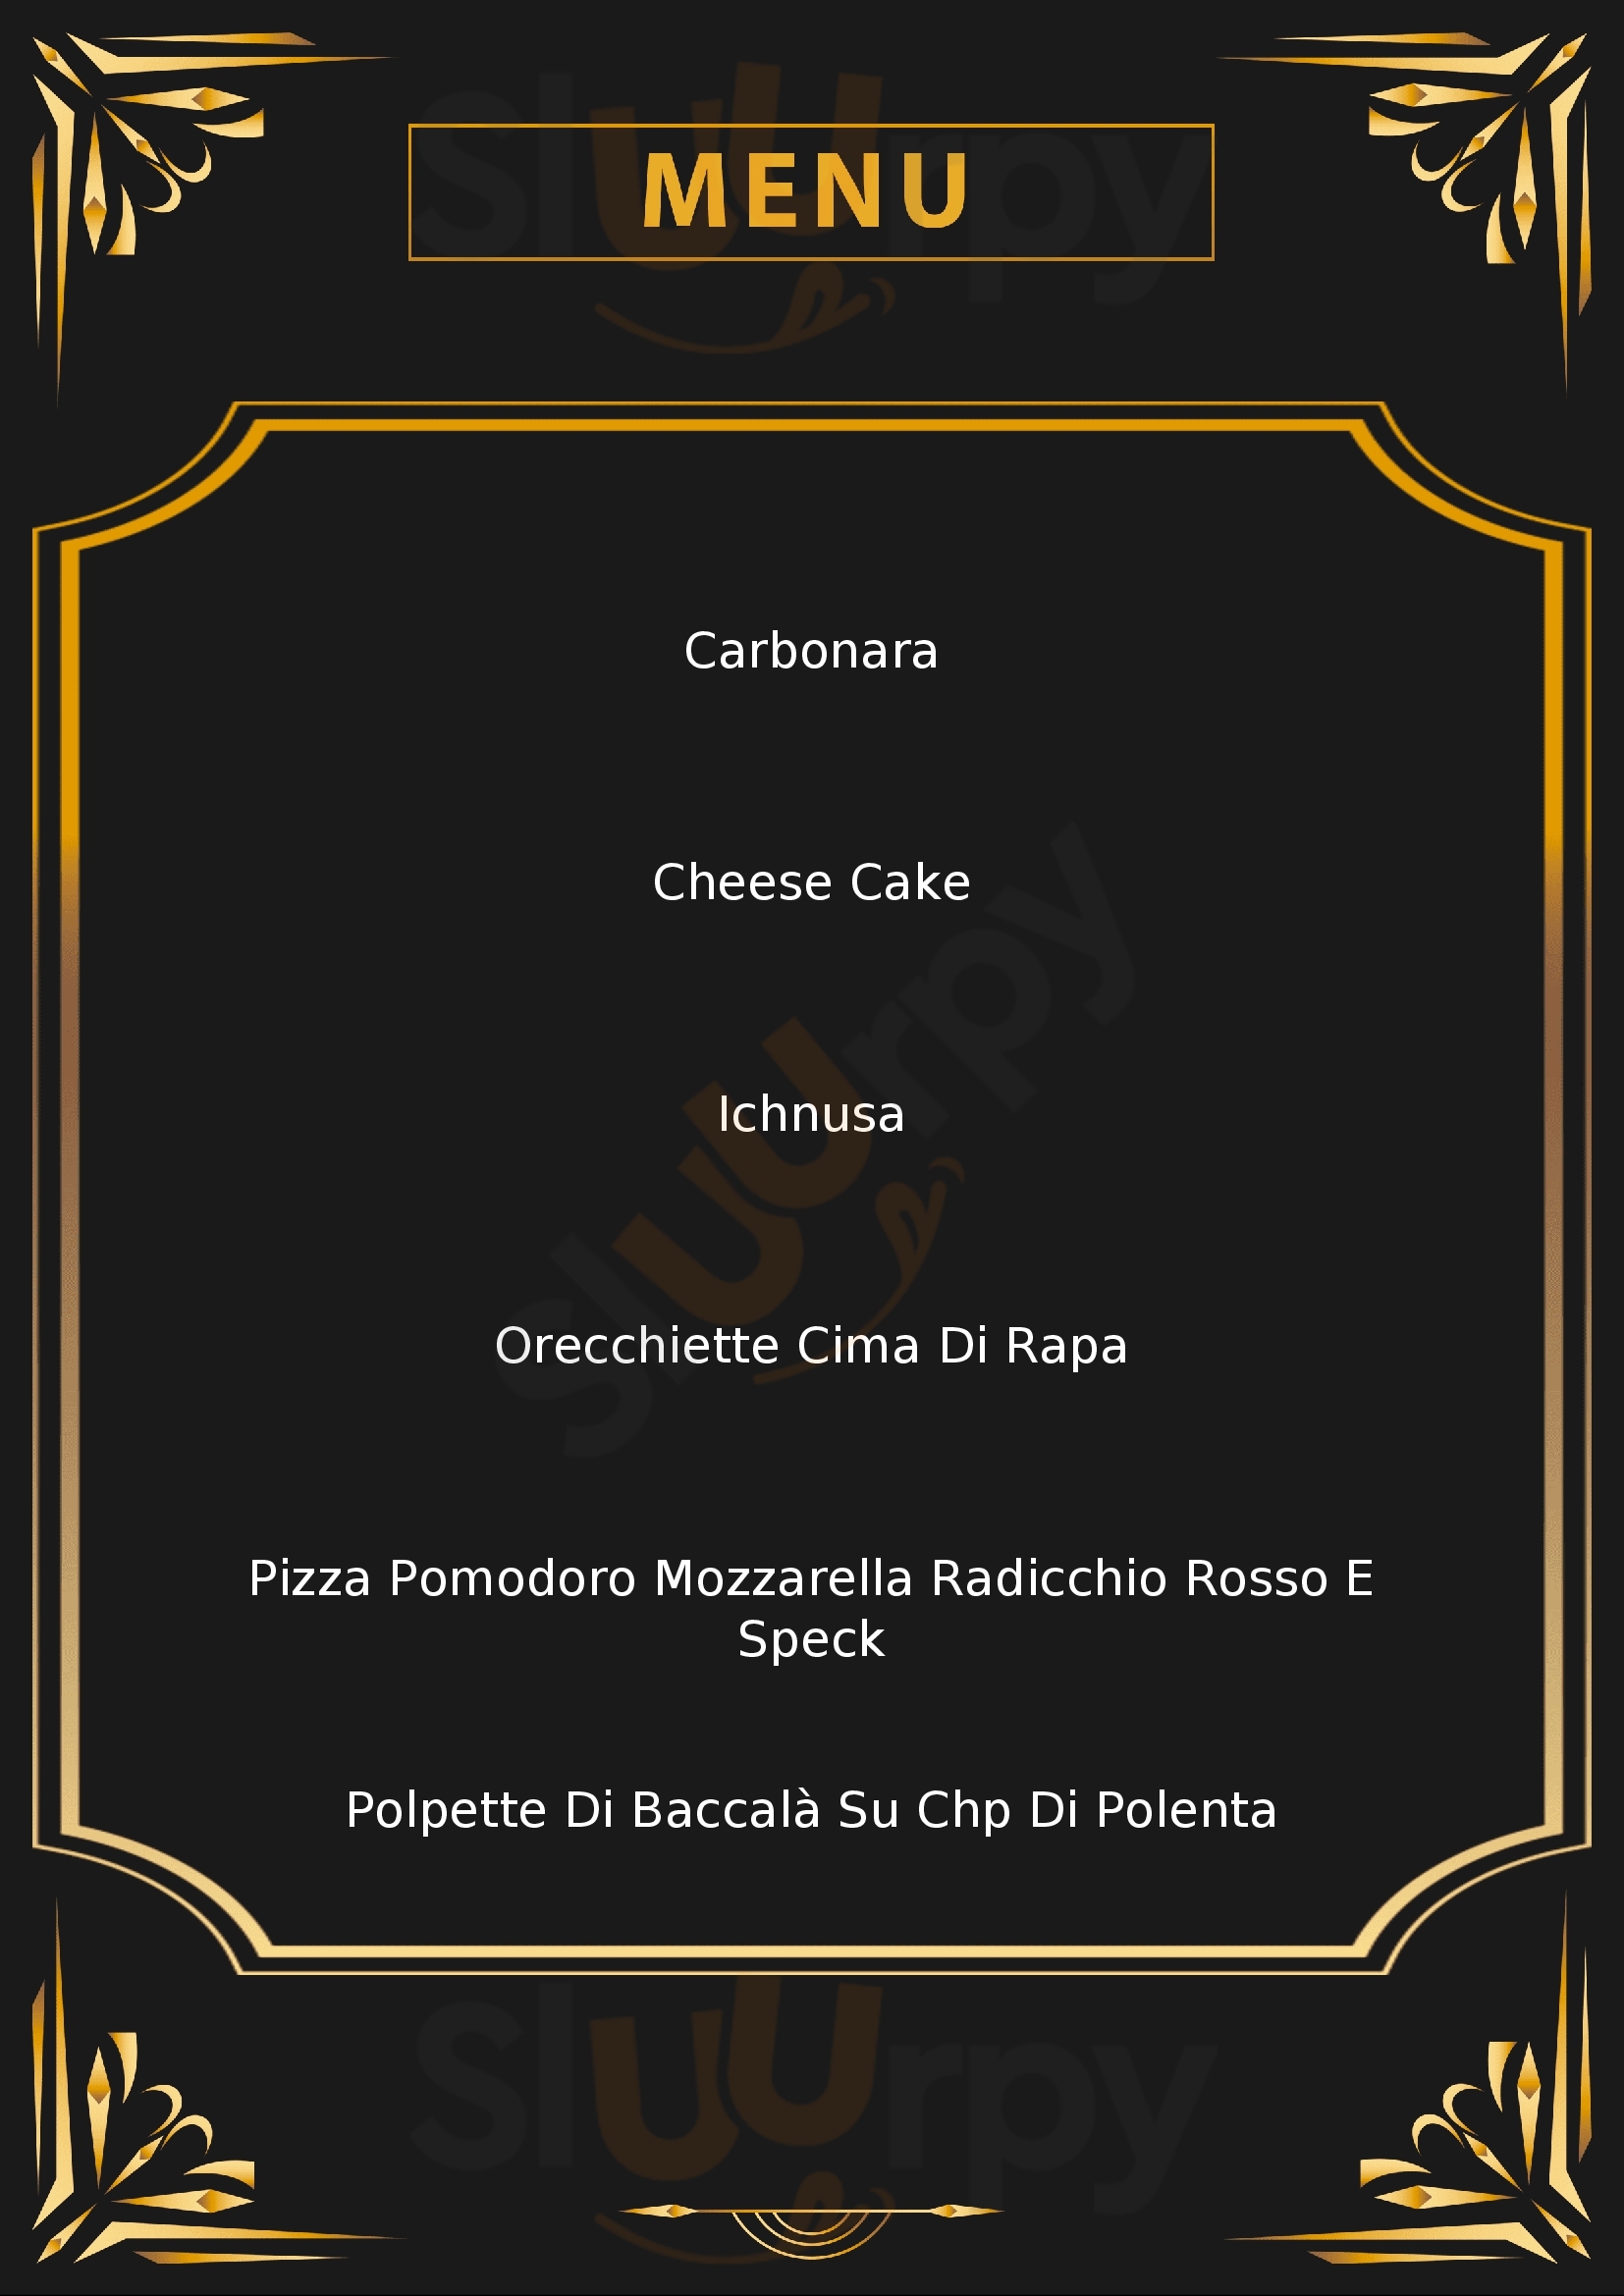 DeLirio Bistrot Pizzeria Coriano menù 1 pagina